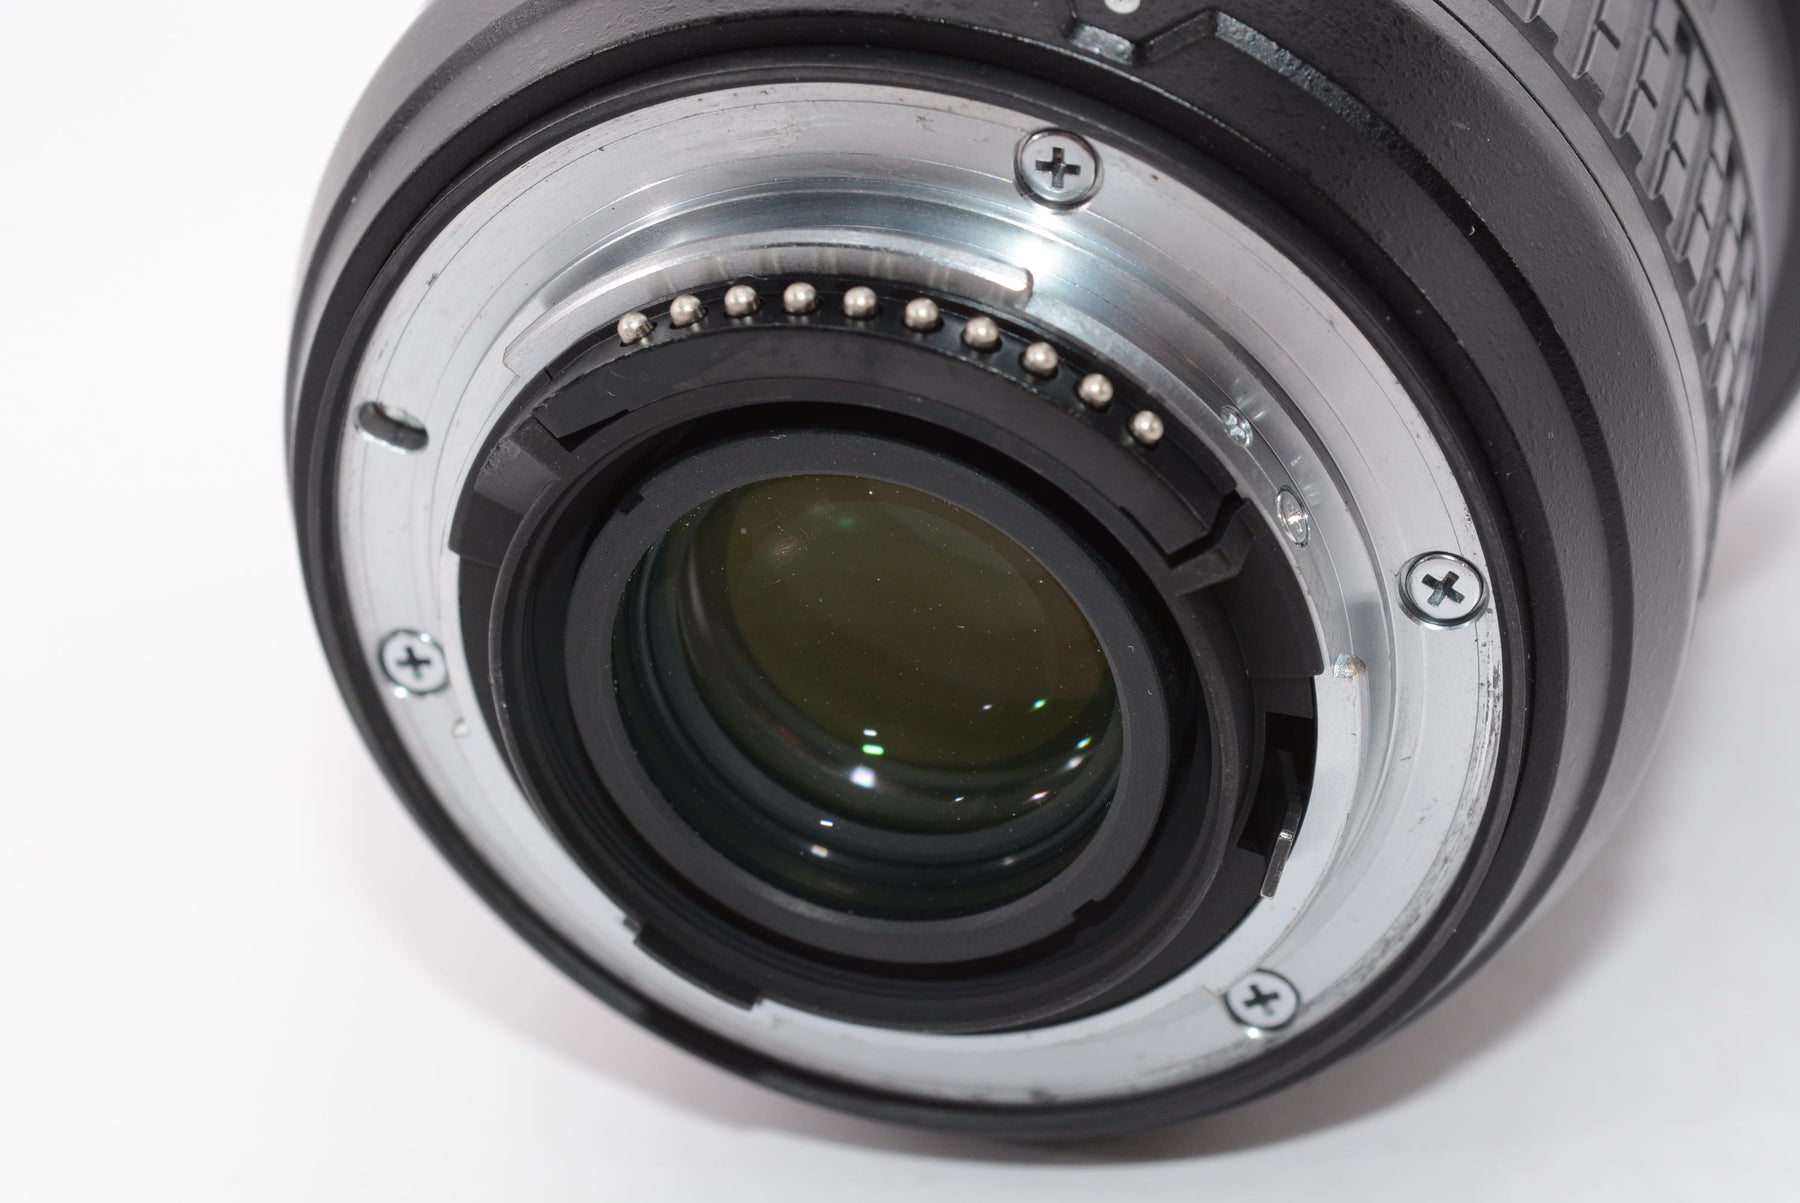 【外観特上級】Nikon 超広角ズームレンズ AF-S NIKKOR 14-24mm f/2.8G ED